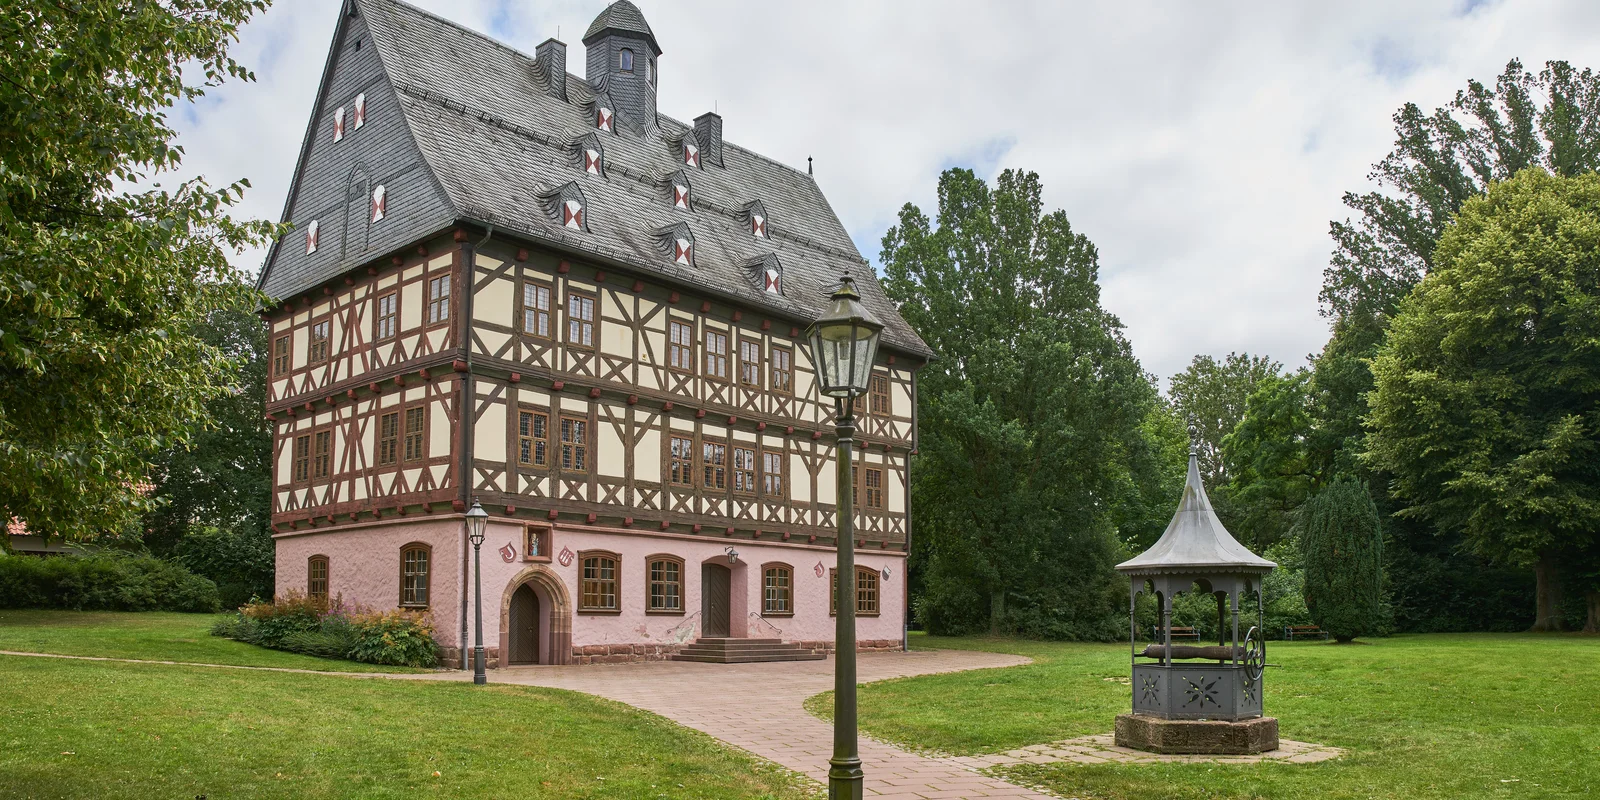 Außenaufnahme des Schloss Giebolderhausen. Ein Fachwerkbau mit gemauertem rosa Erdgeschoss.